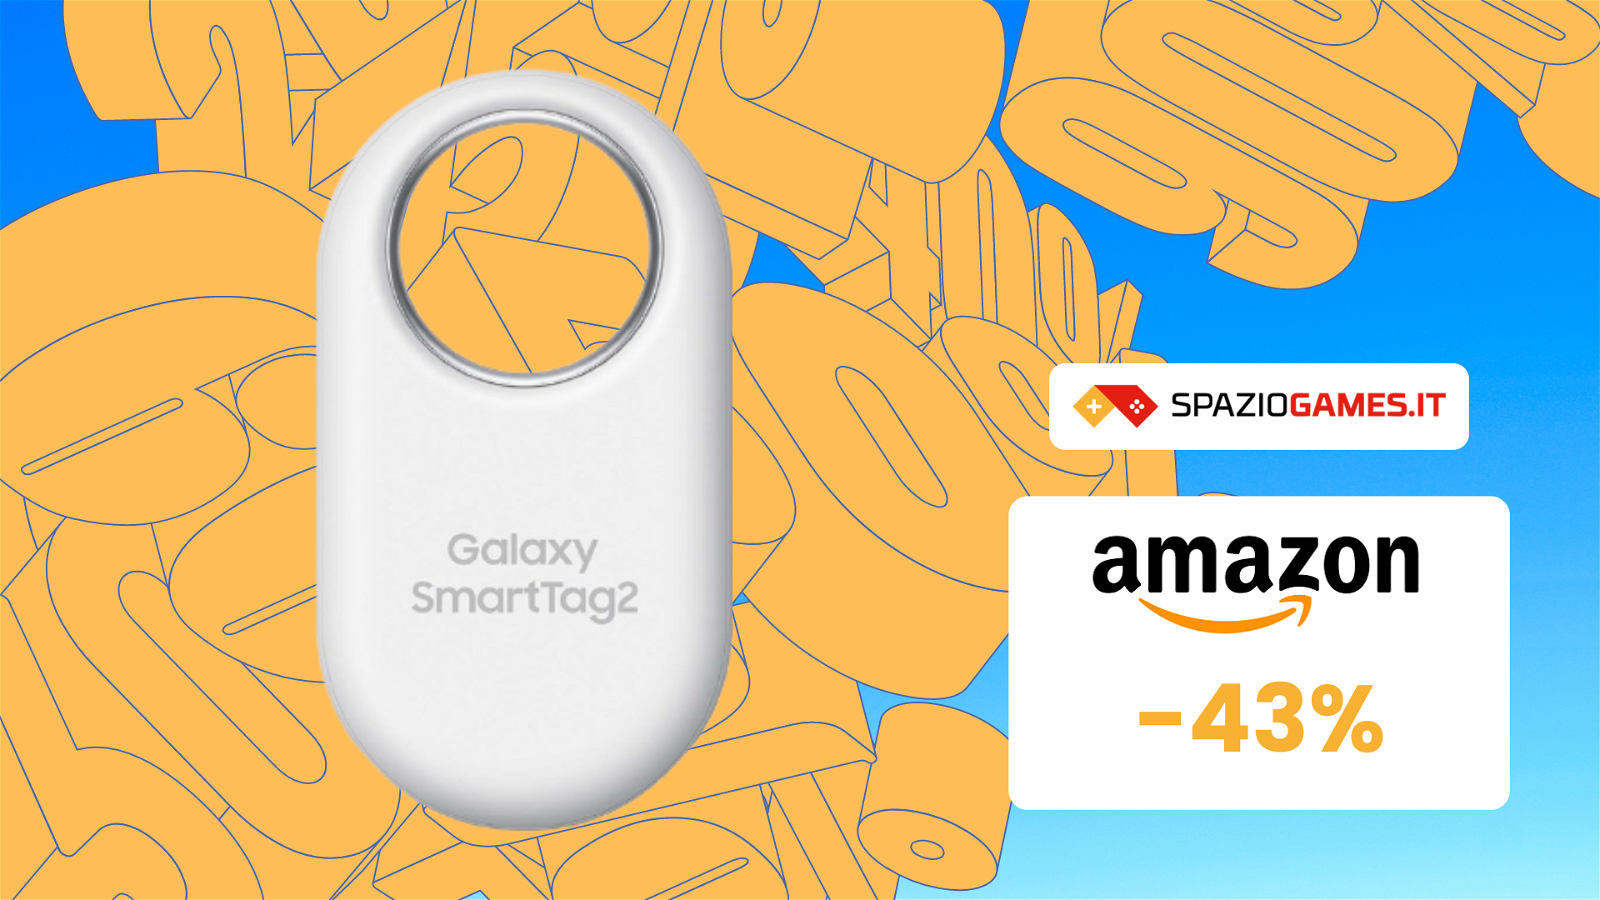 WOW! Galaxy SmartTag2 di Samsung a PREZZO BASSISSIMO! -43%